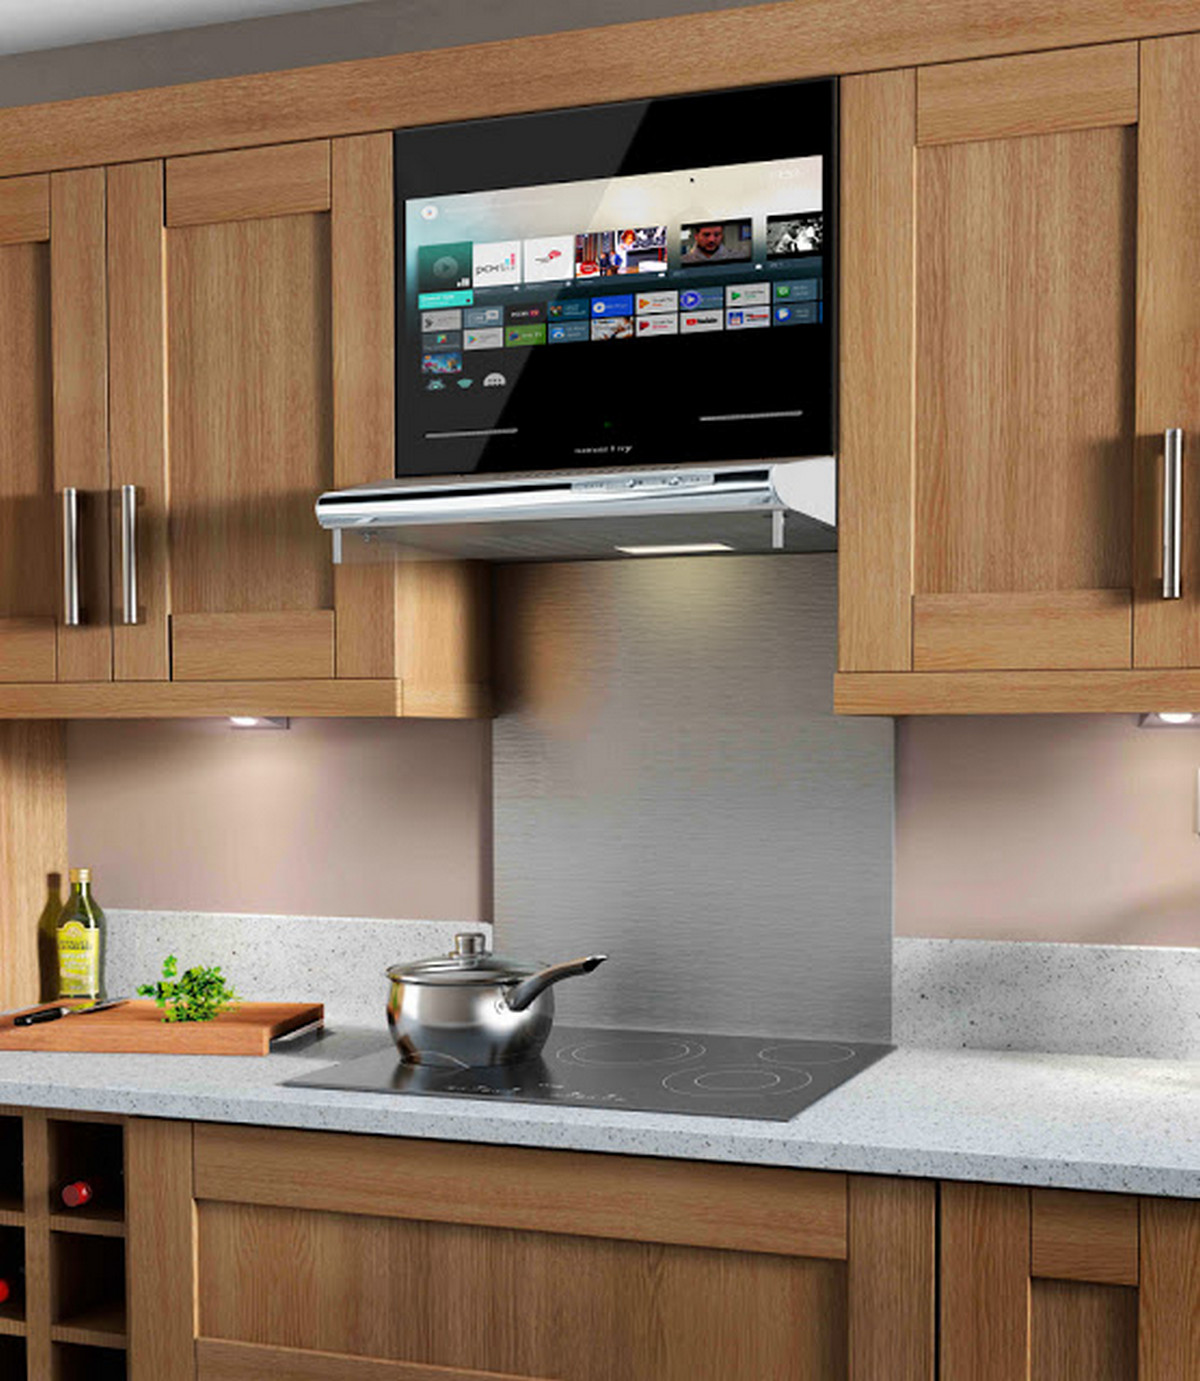 Лучшие телевизоры для кухни. Встраиваемый телевизор для кухни. Телевизор встраиваемый в кухонный гарнитур. Встроенный телевизор в кухонный гарнитур. Встраиваемые кухни.